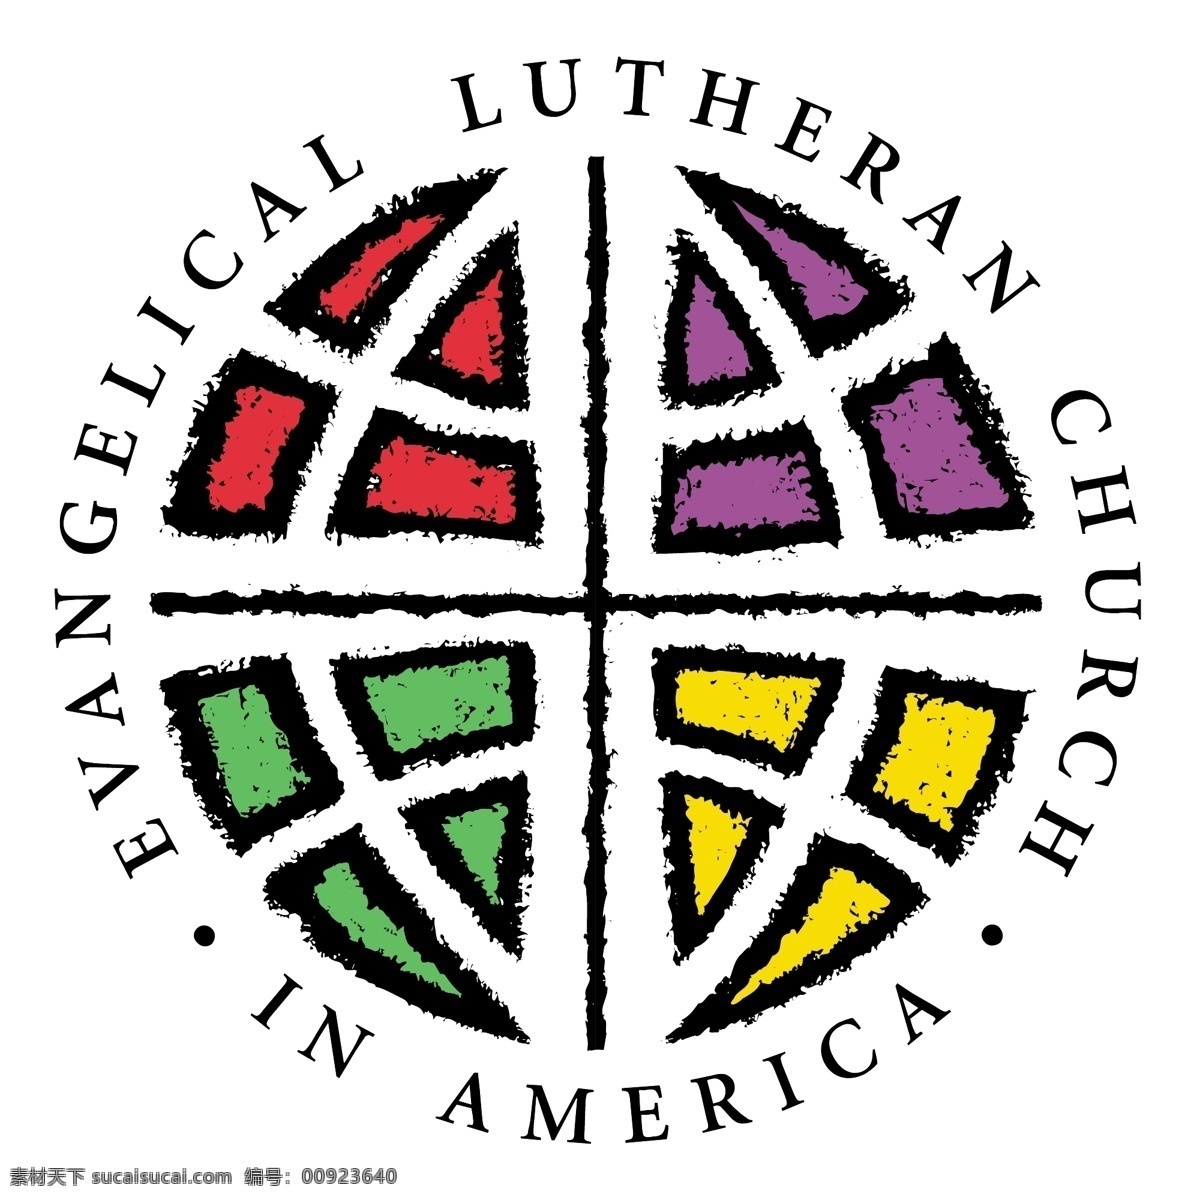 美国 福音 路德 教会 自由 标志 免费 psd源文件 logo设计